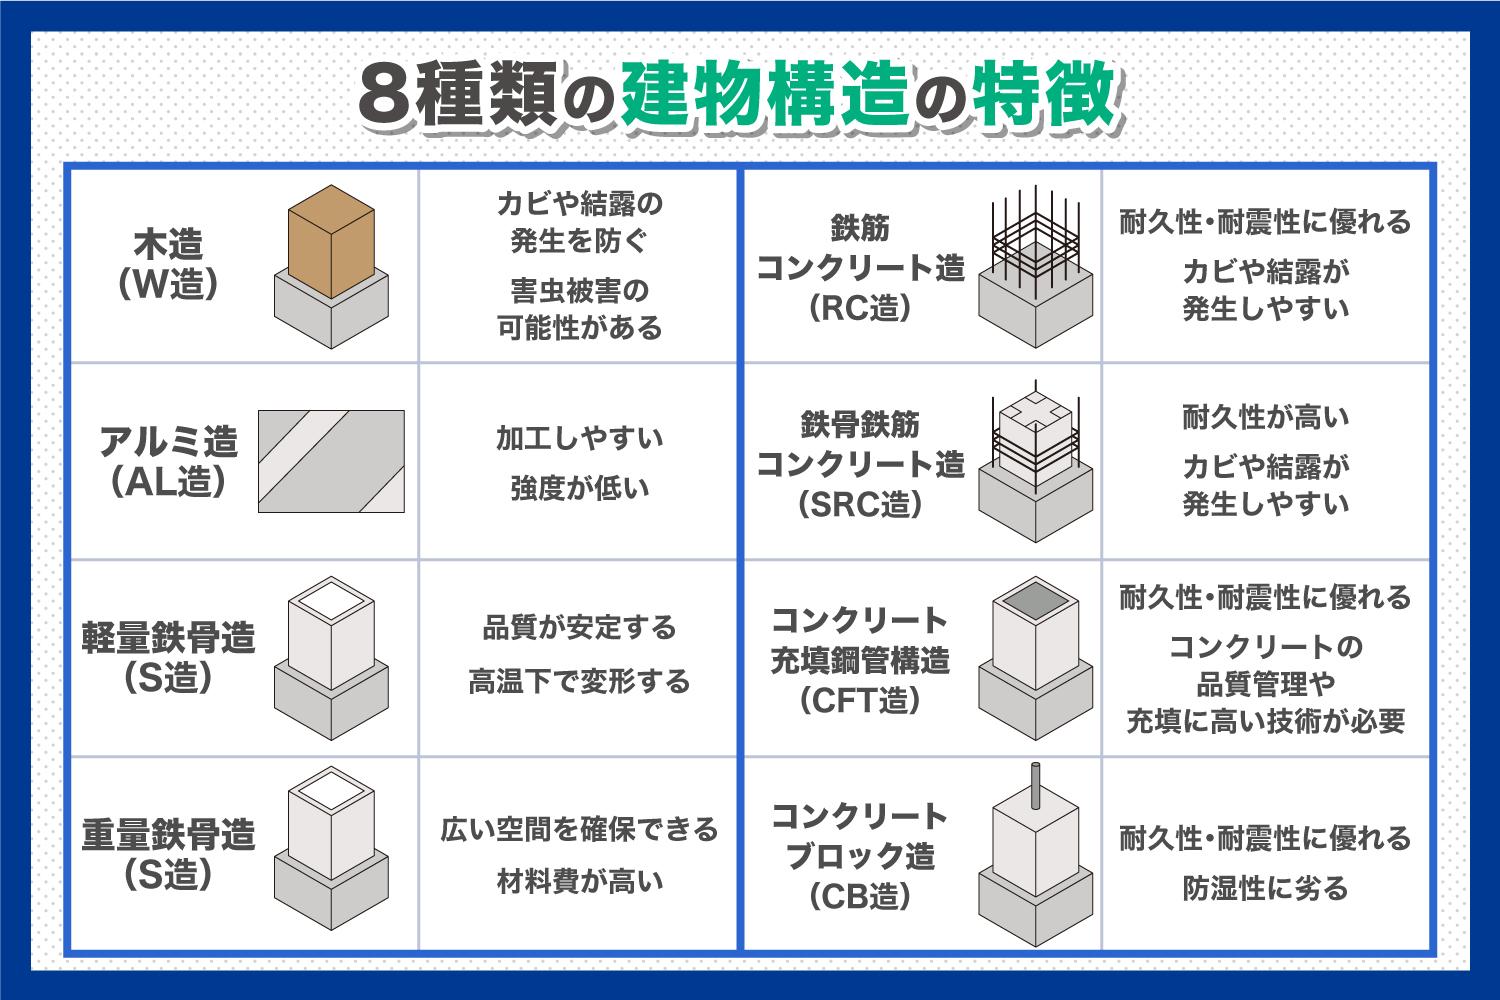 _8種類の建物構造をメリット・デメリット別に解説.